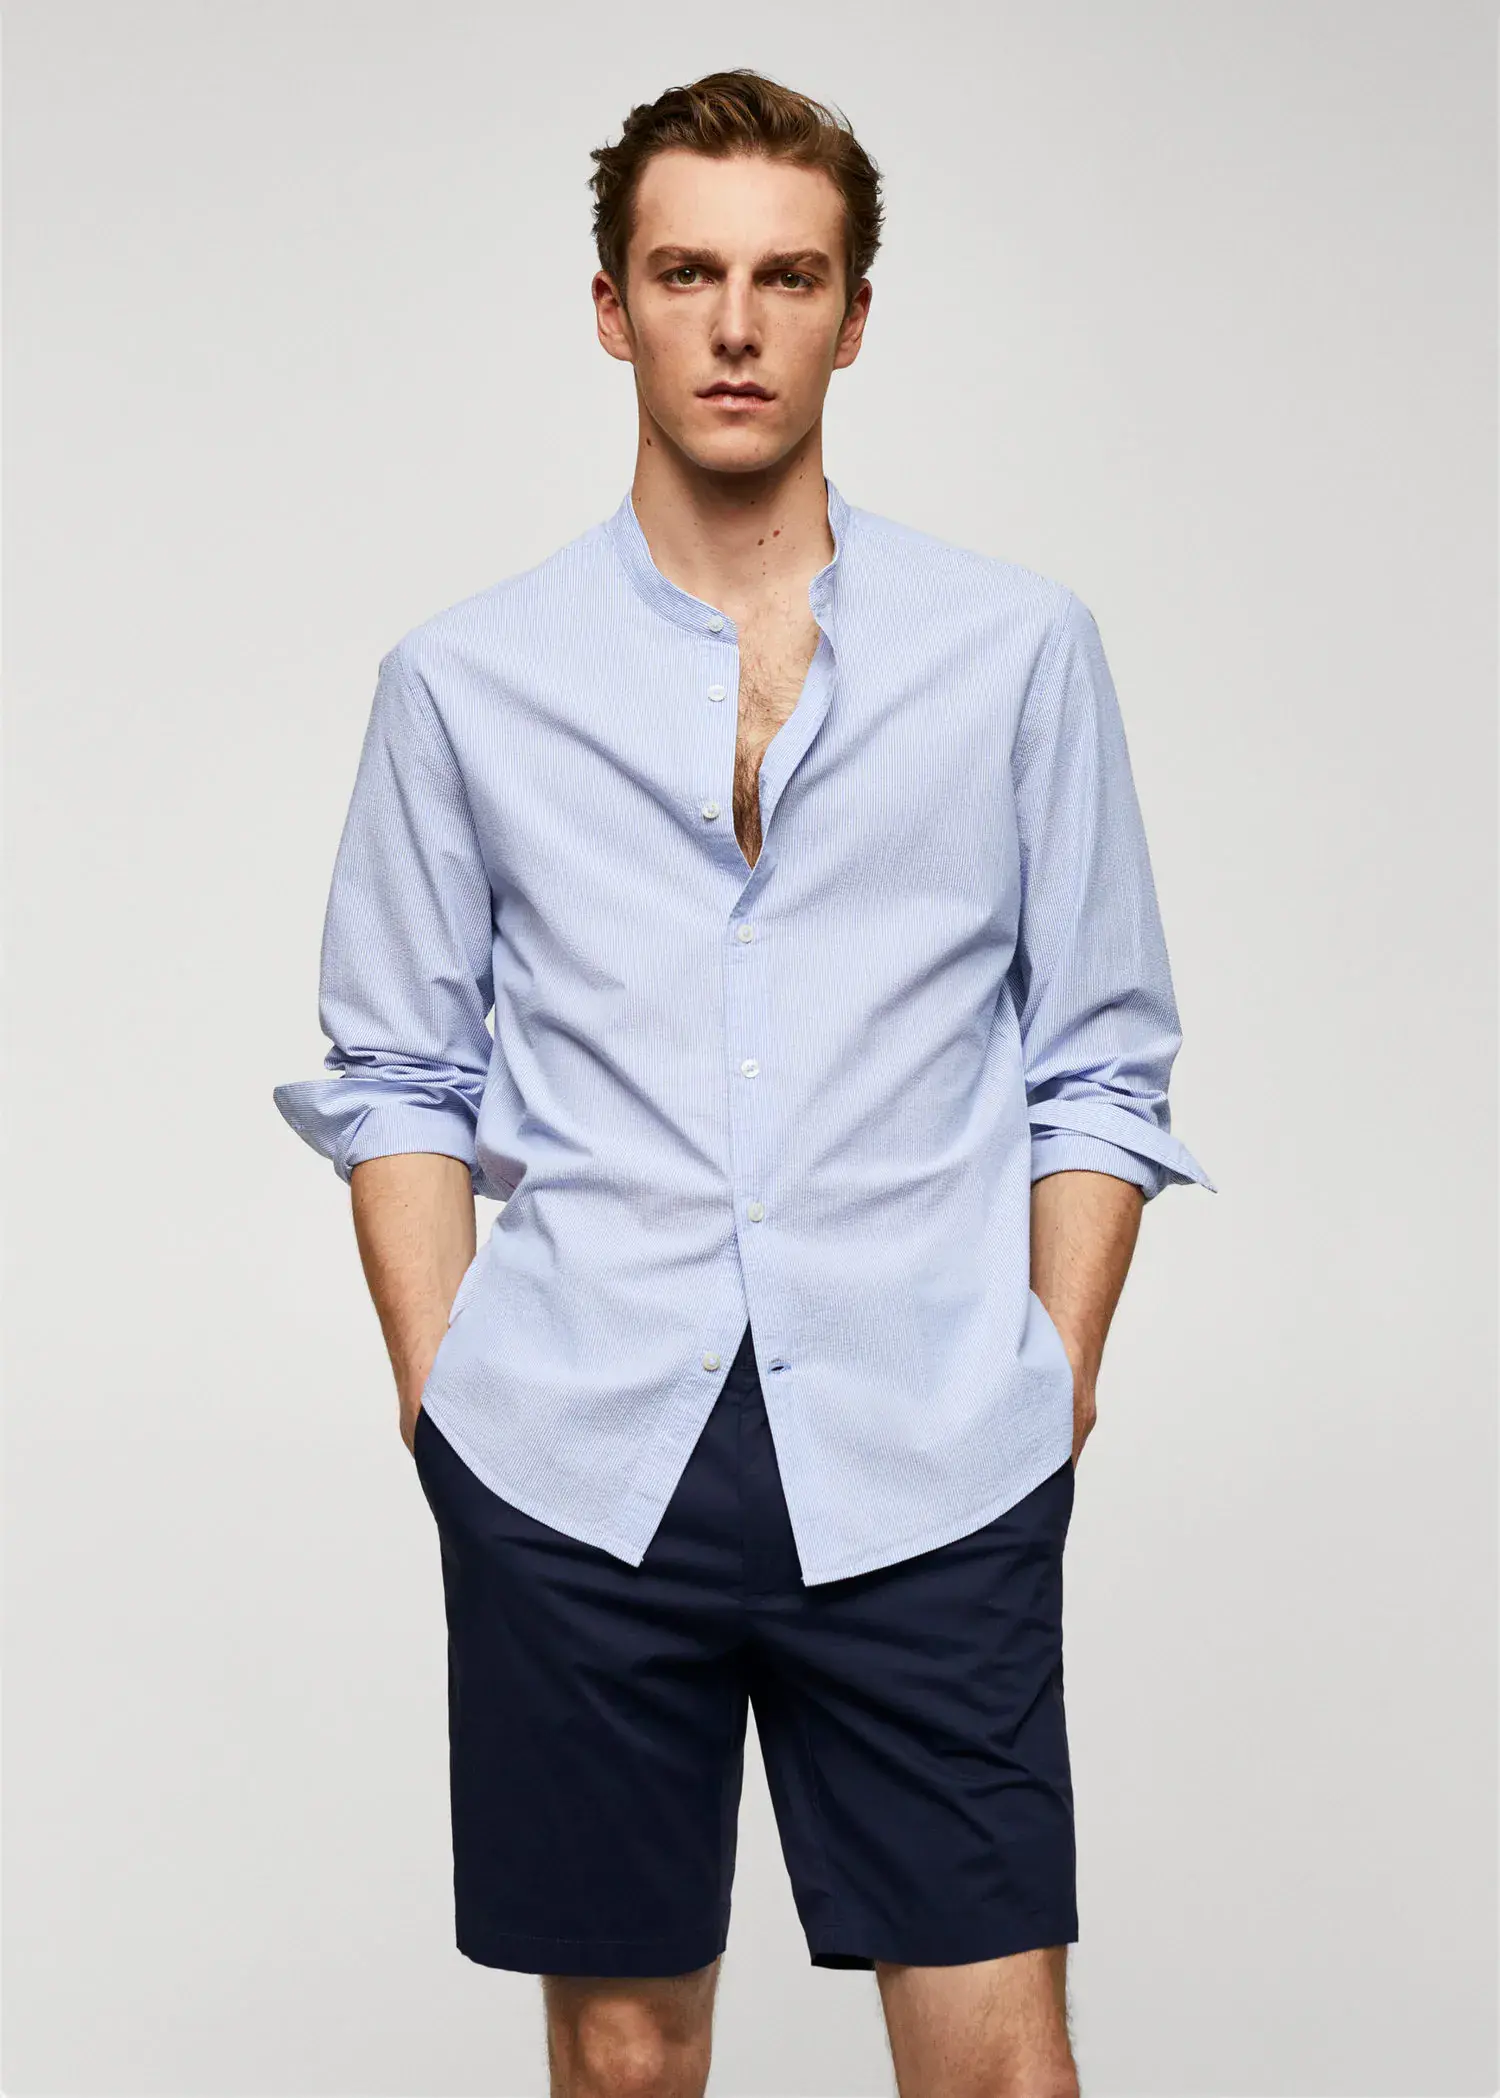 Mango Cotton seersucker shirt with multiple stripes. a man wearing a light blue dress shirt. 